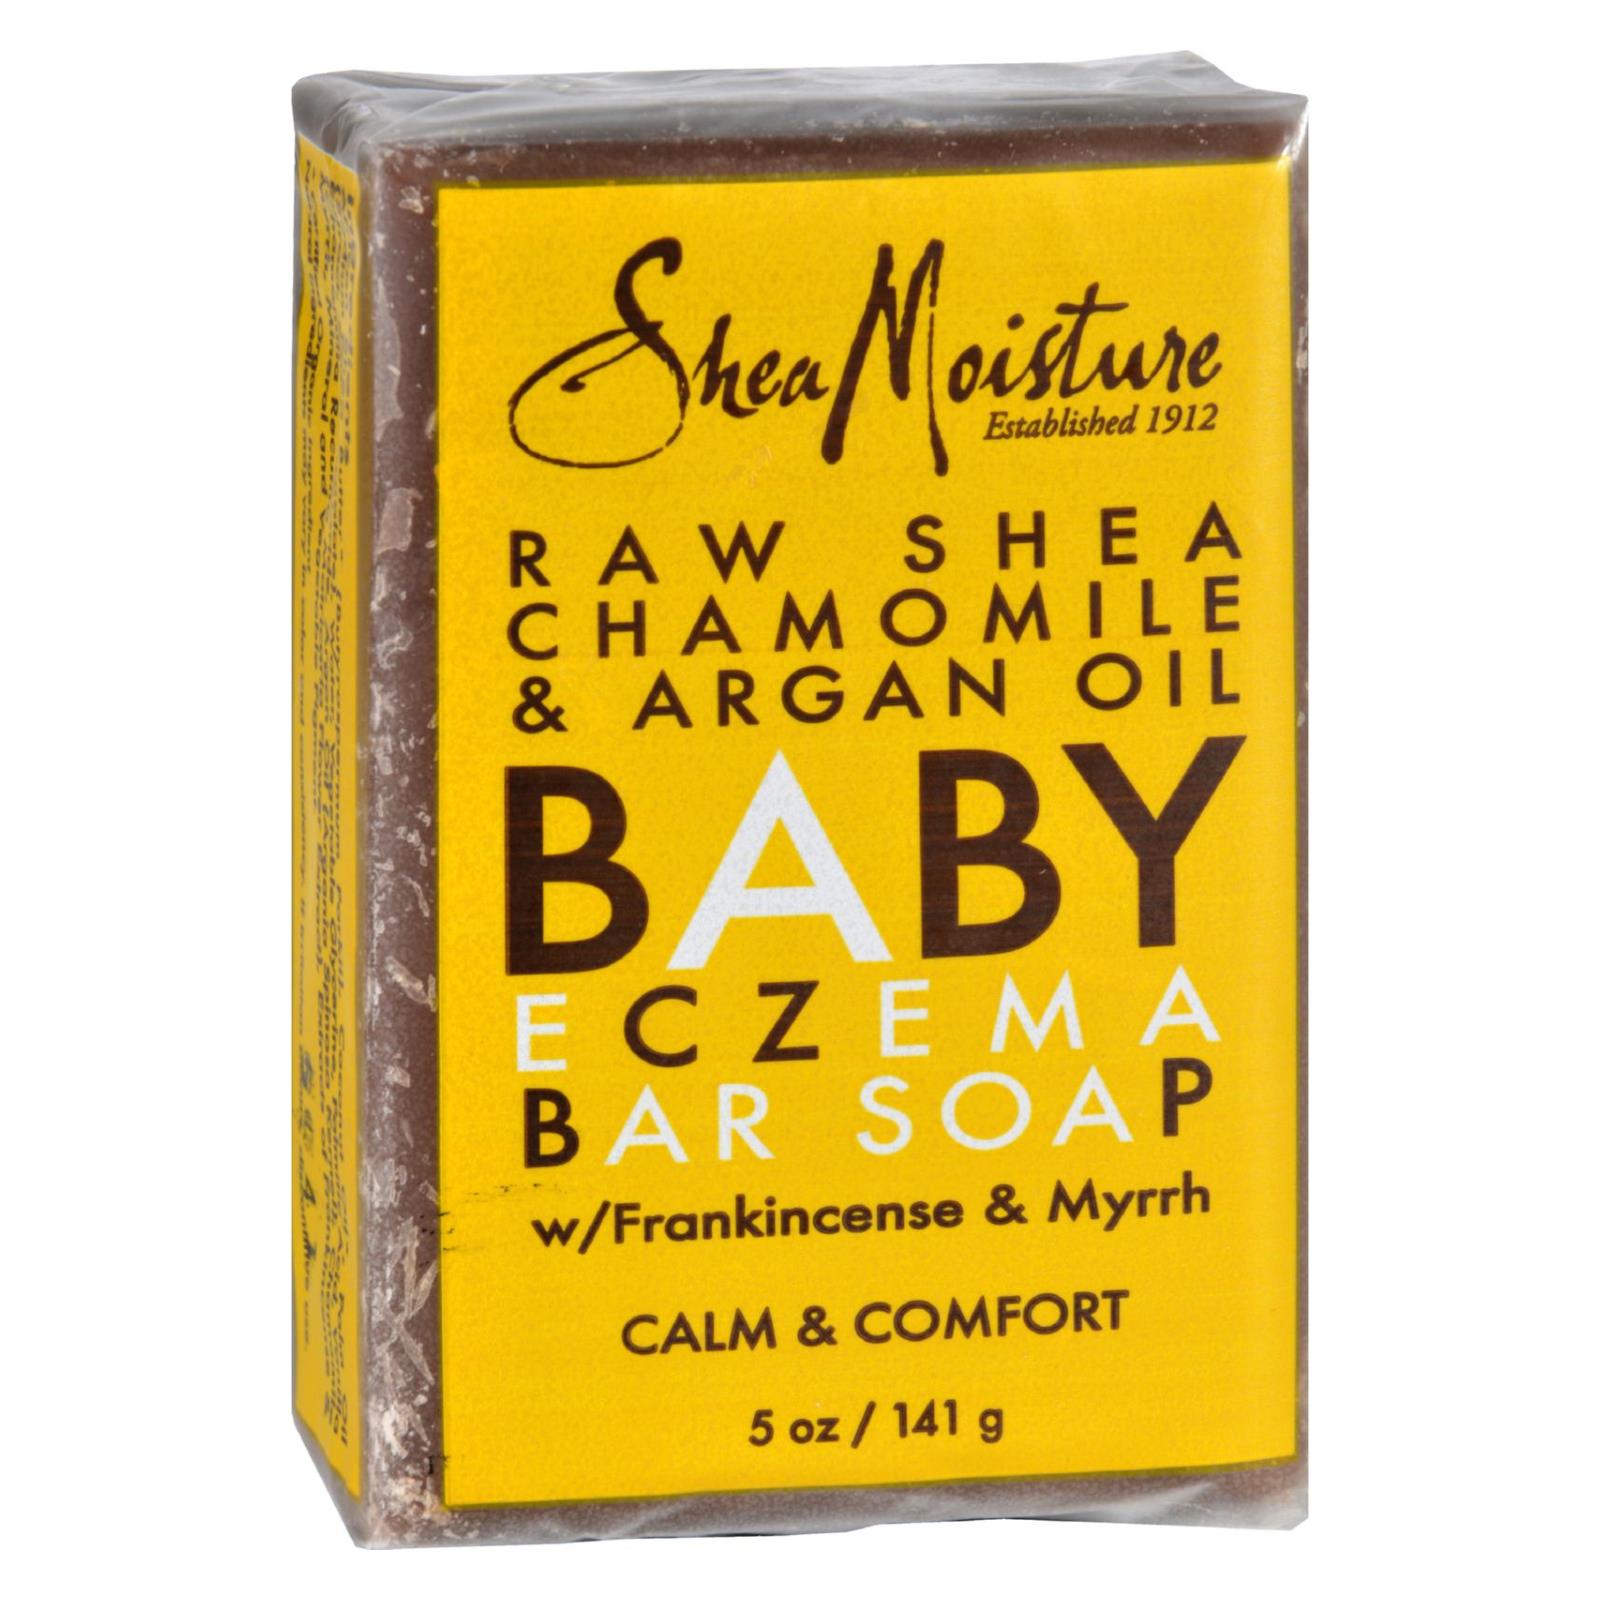 Shea Moisture, SheaMoisture Eczema Soap - Baby Raw Shea - 5 oz